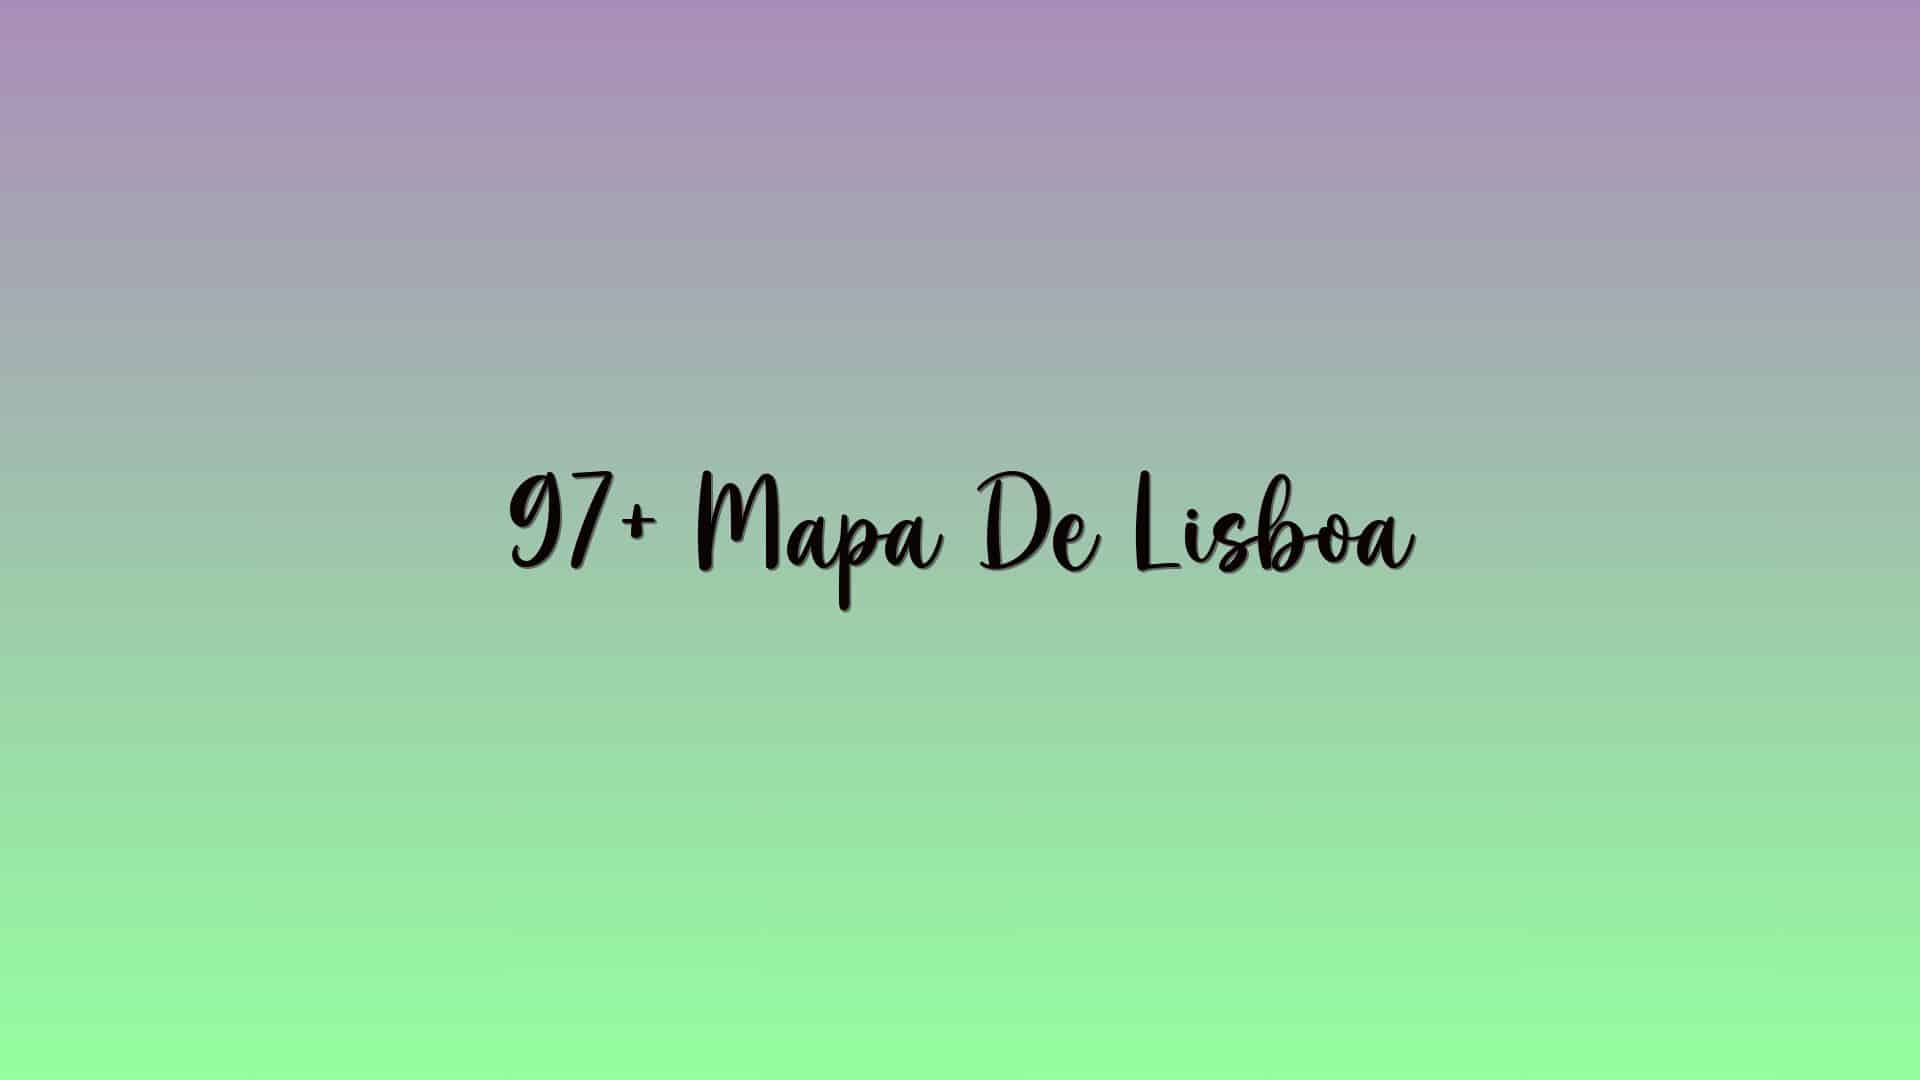 97+ Mapa De Lisboa